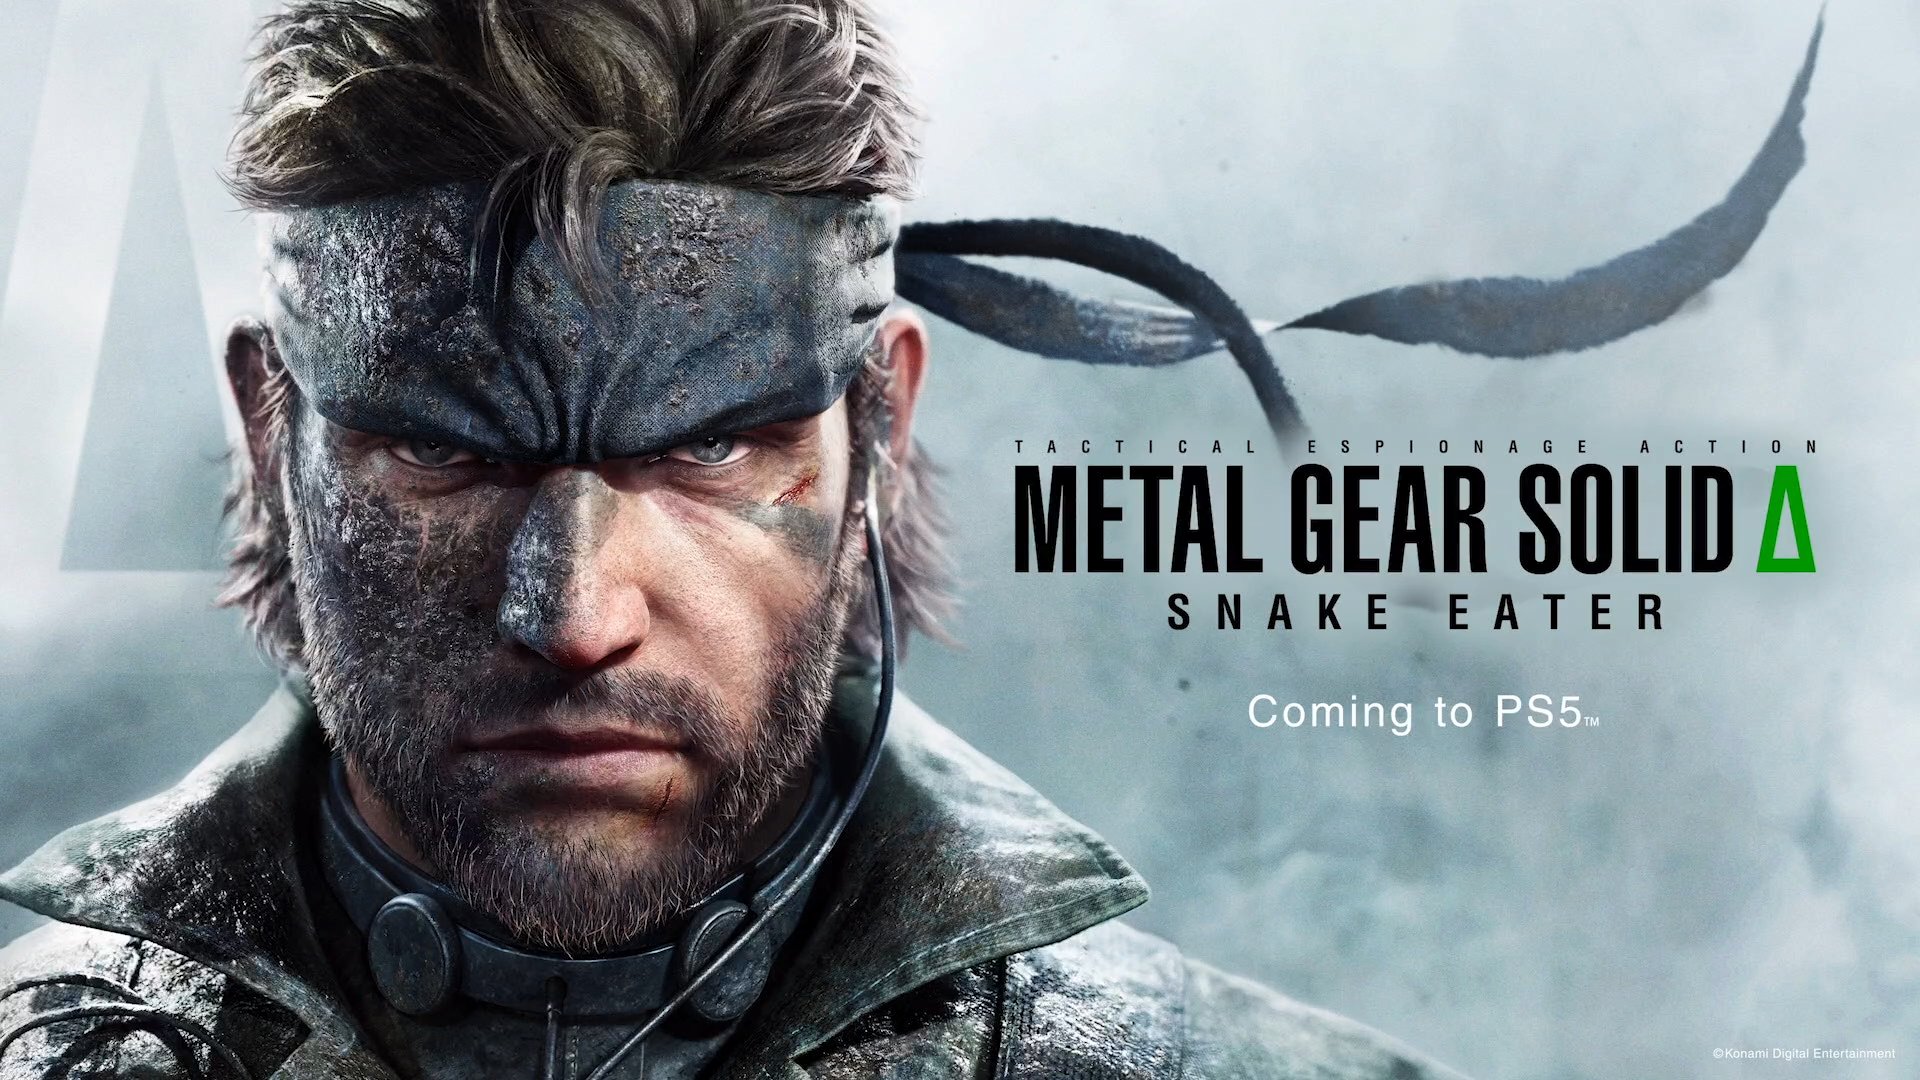 Apresentação PlayStation: Spider-Man 2, Metal Gear Solid 3, Alan Wake 2  Actualização do anúncio 